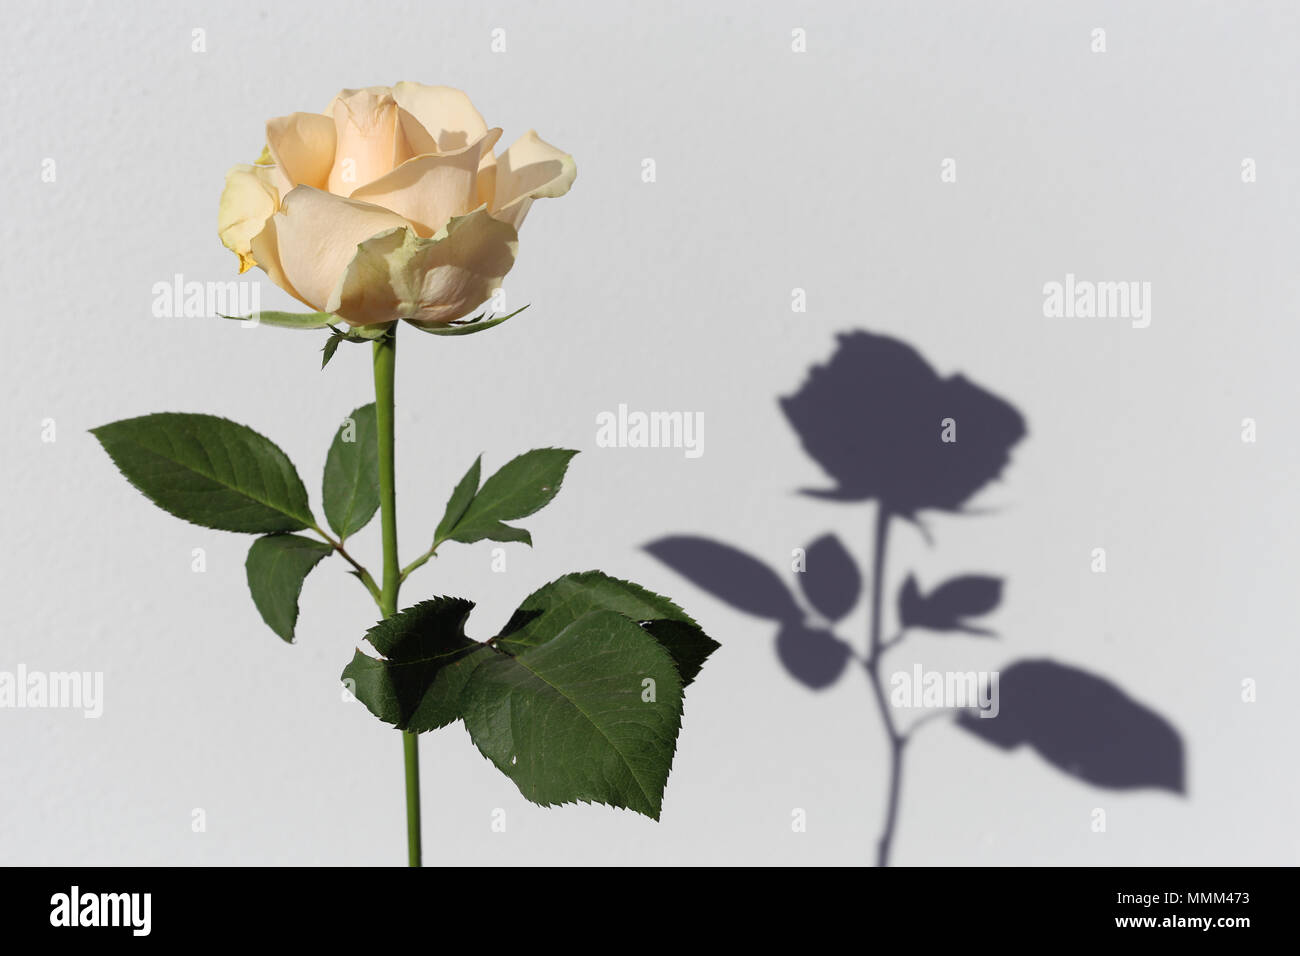 Licht gelb/Natural White Rose mit grünen Blätter und Stängel. Es gibt  weissen Hintergrund und auch eine interessante Schatten Stockfotografie -  Alamy